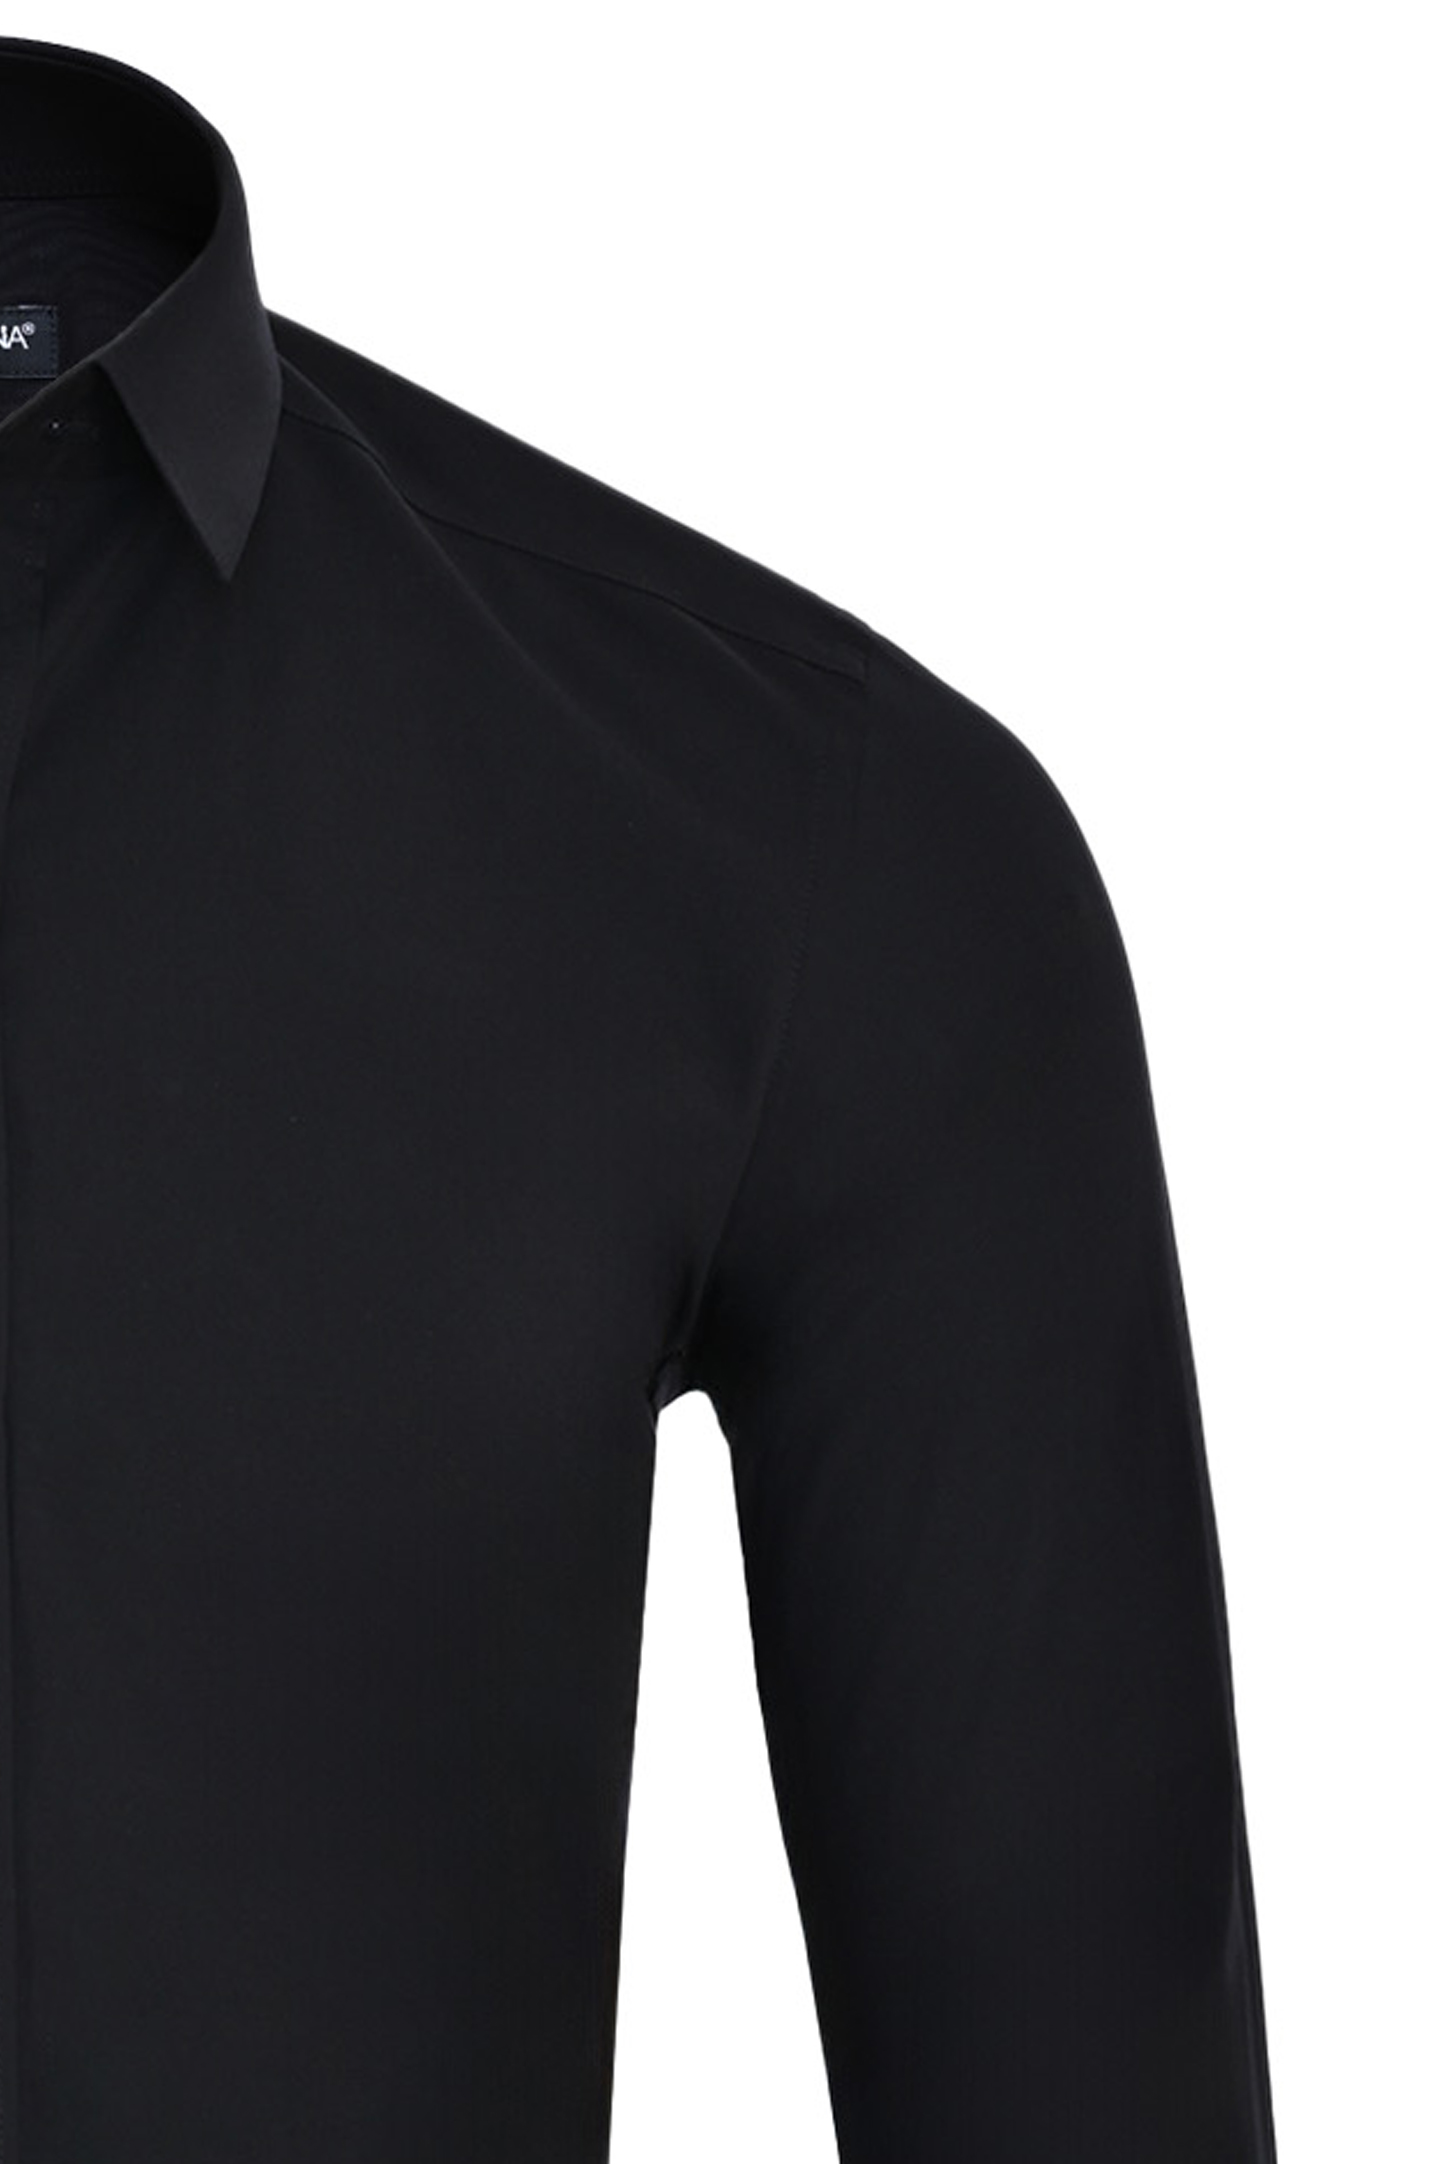 Рубашка DOLCE & GABBANA G5EJ0T GG826, цвет: Черный, Мужской